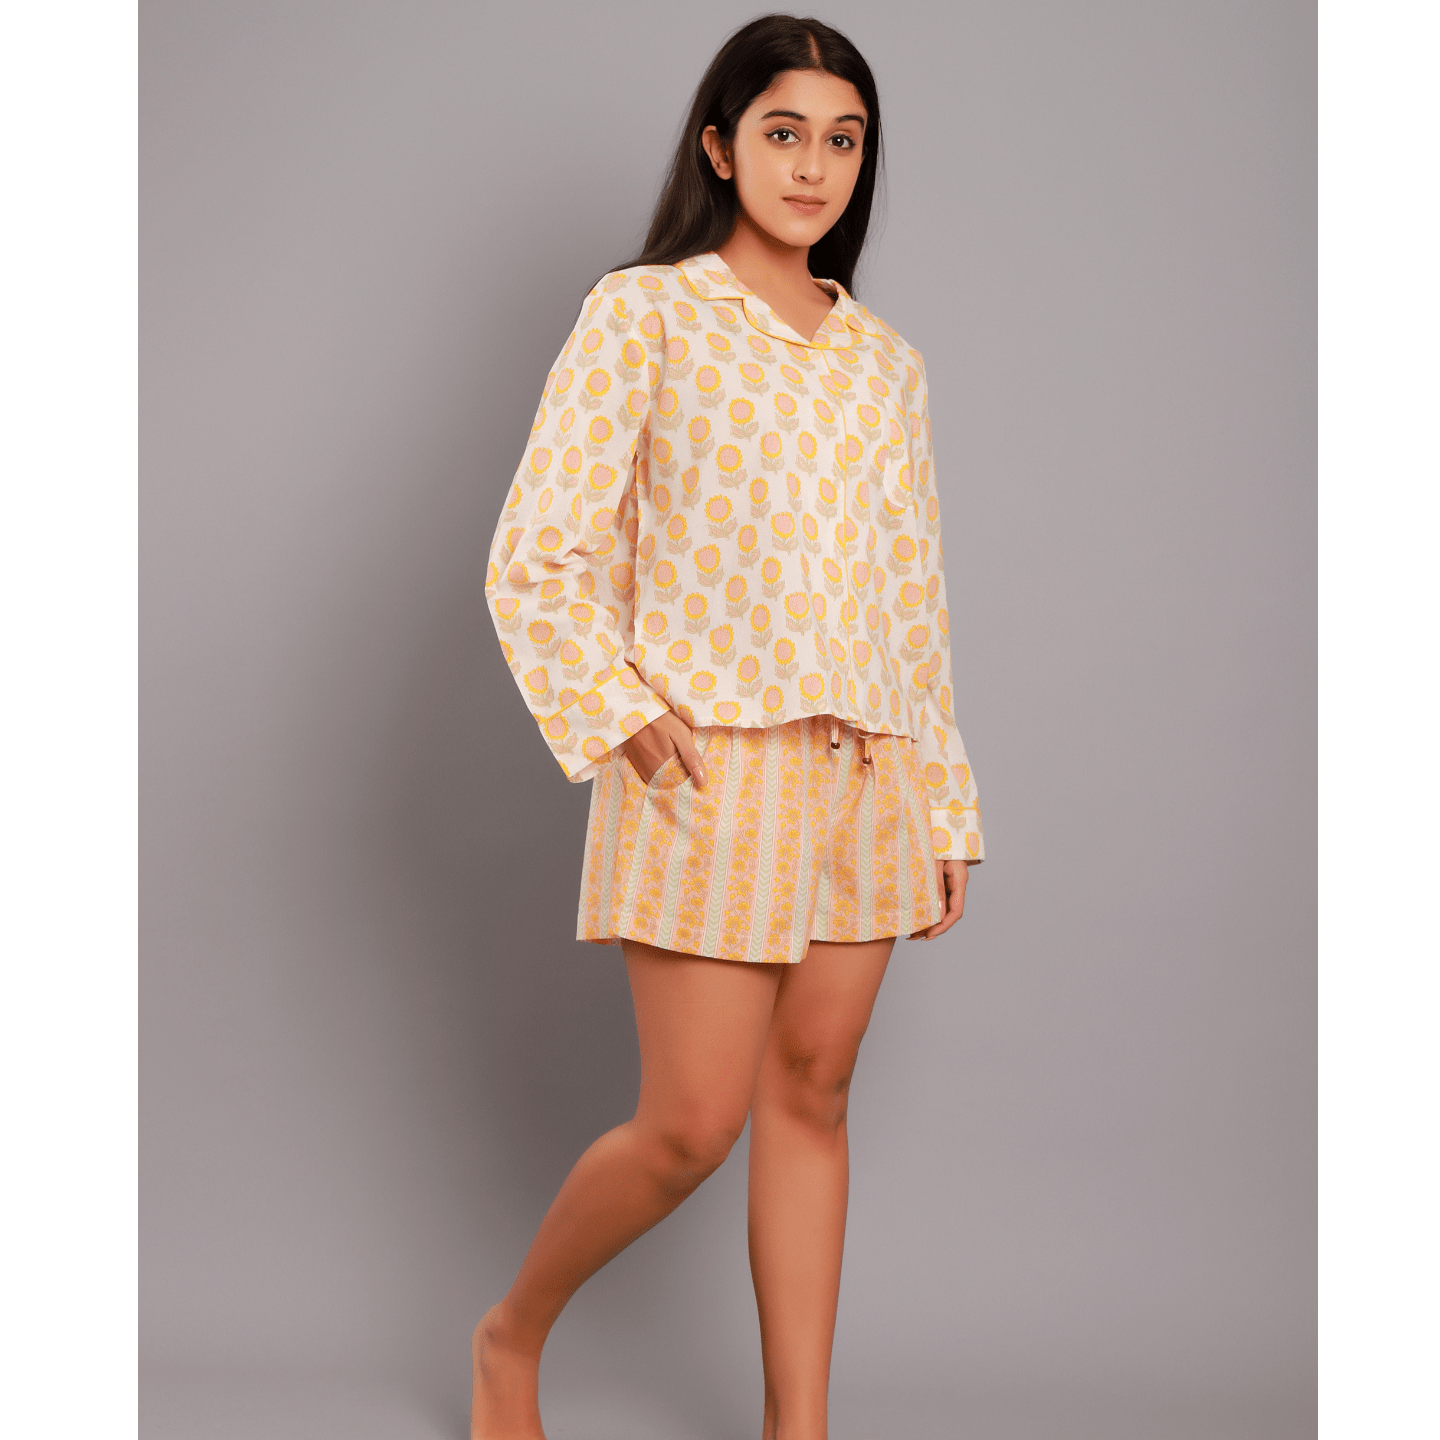 Women nightsuit shorts sunflower yellow